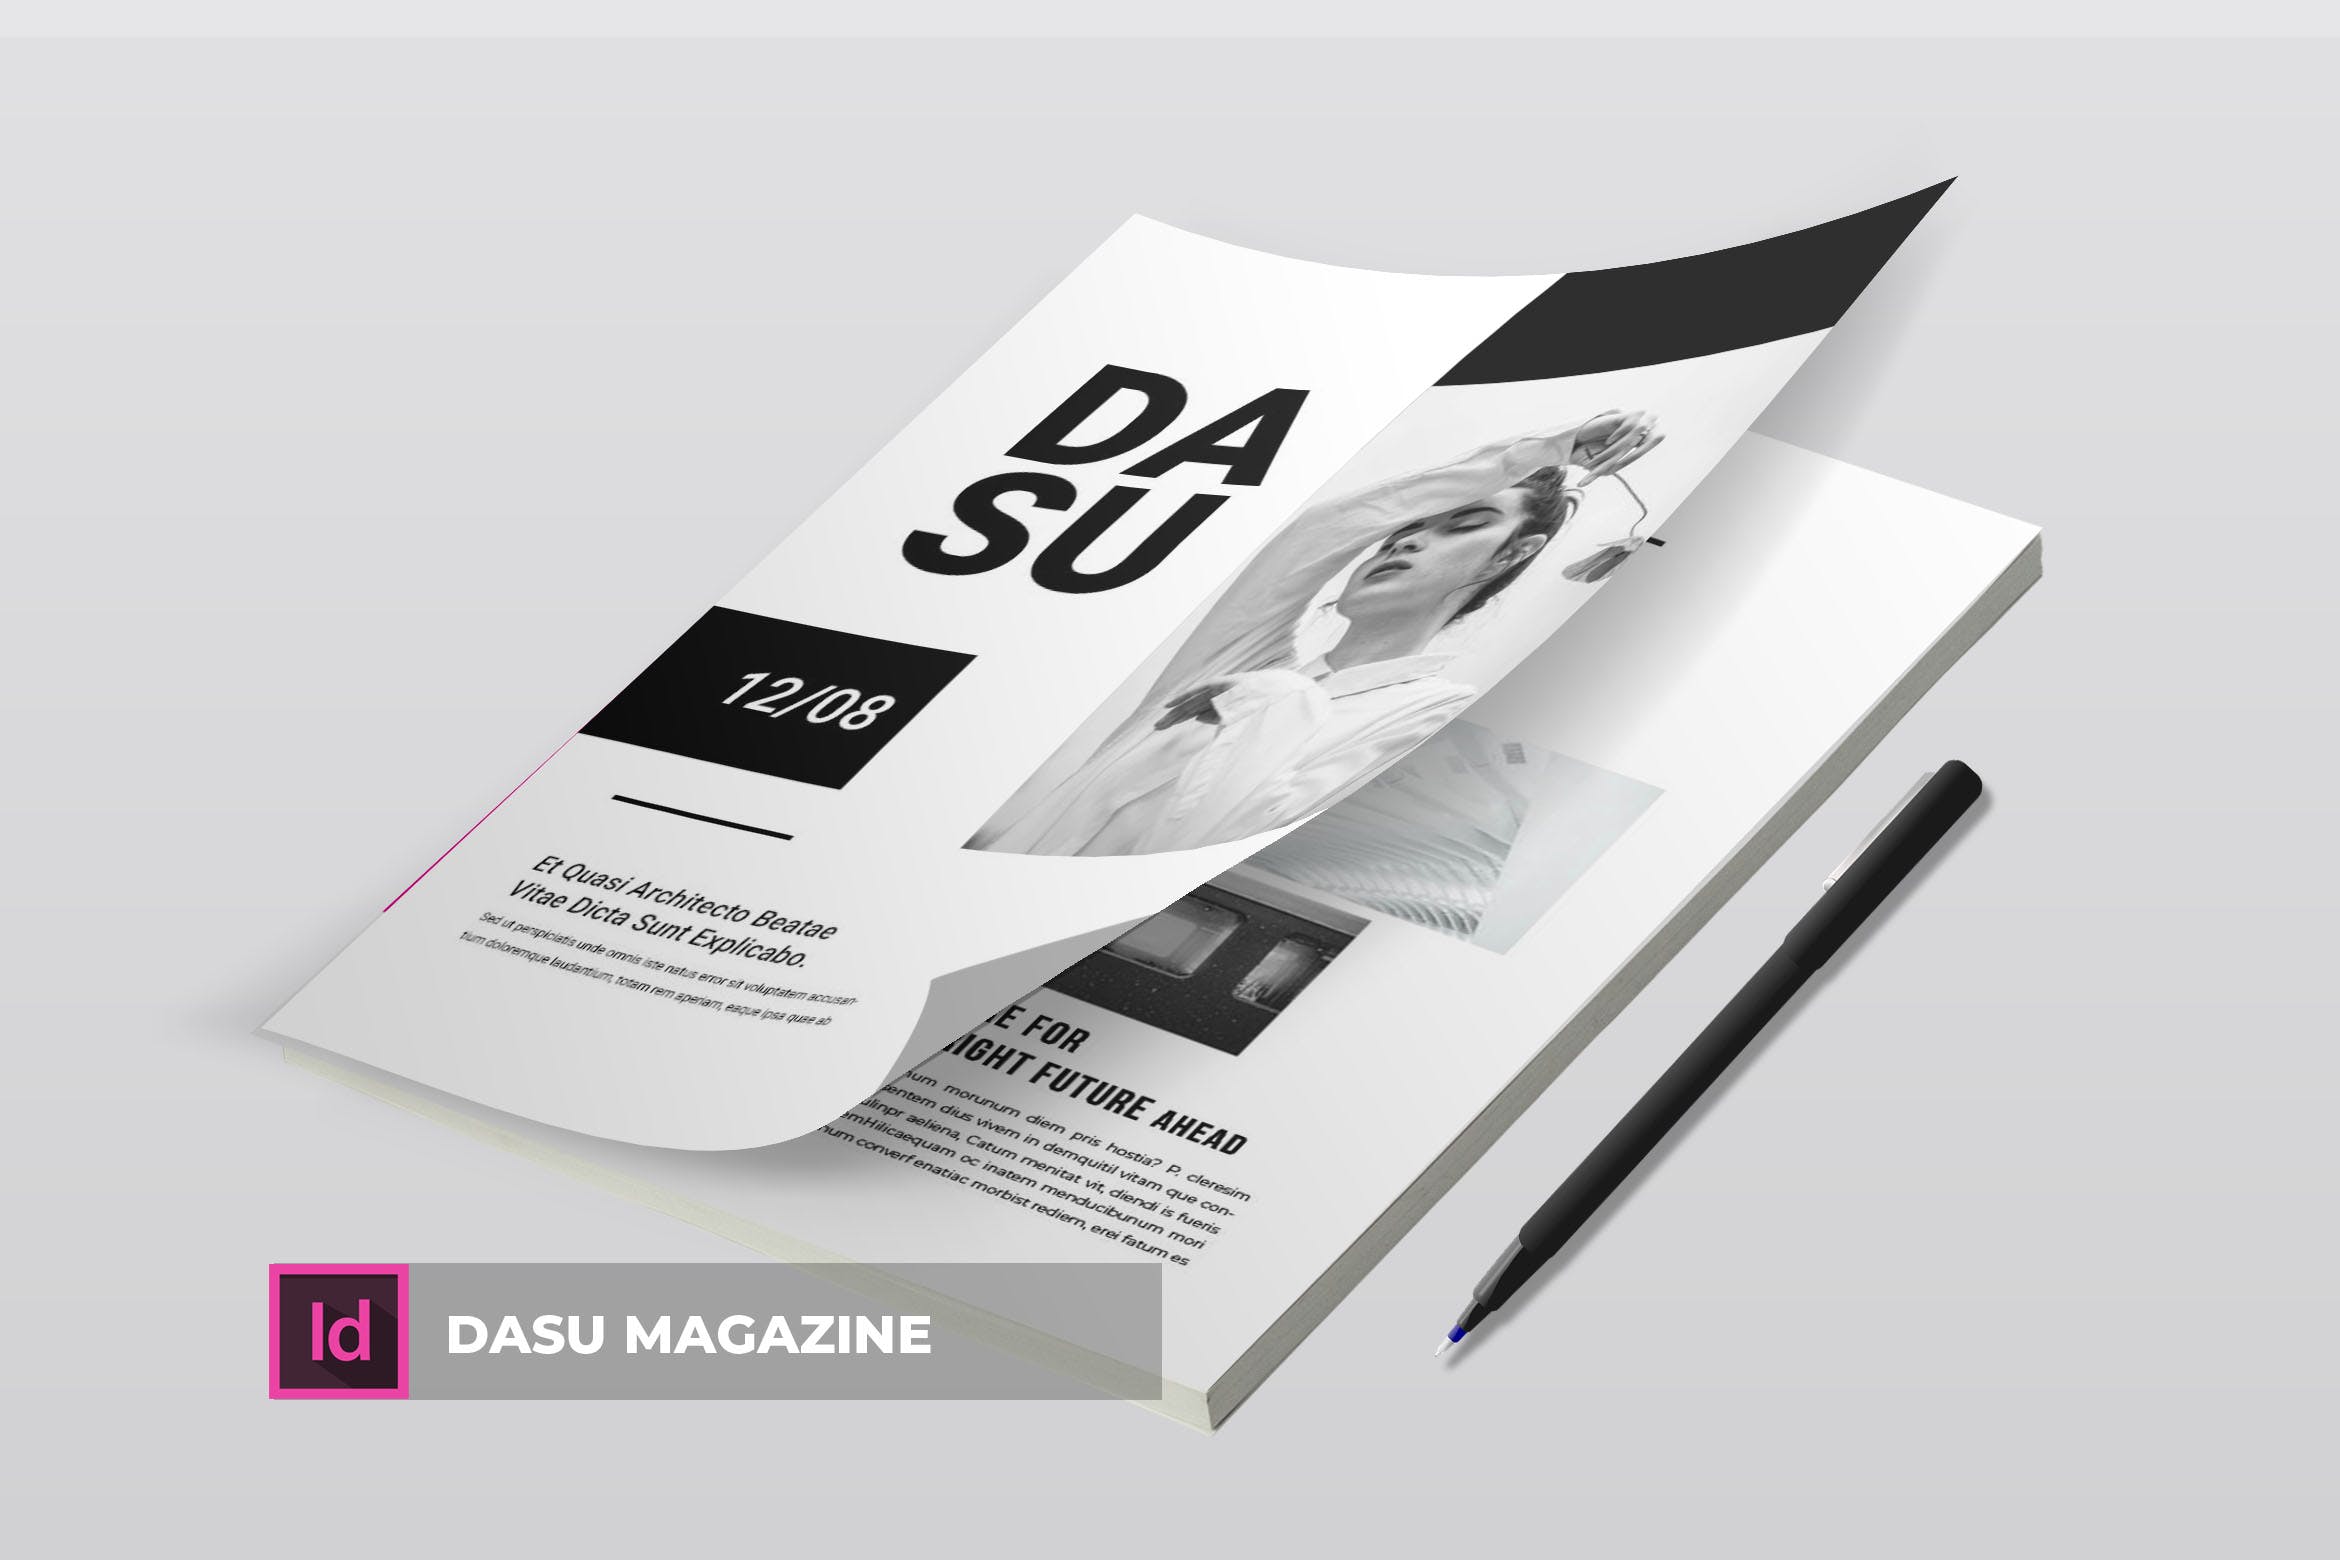 摄影艺术/时装设计主题素材库精选杂志排版设计模板 Dasu | Magazine Template插图